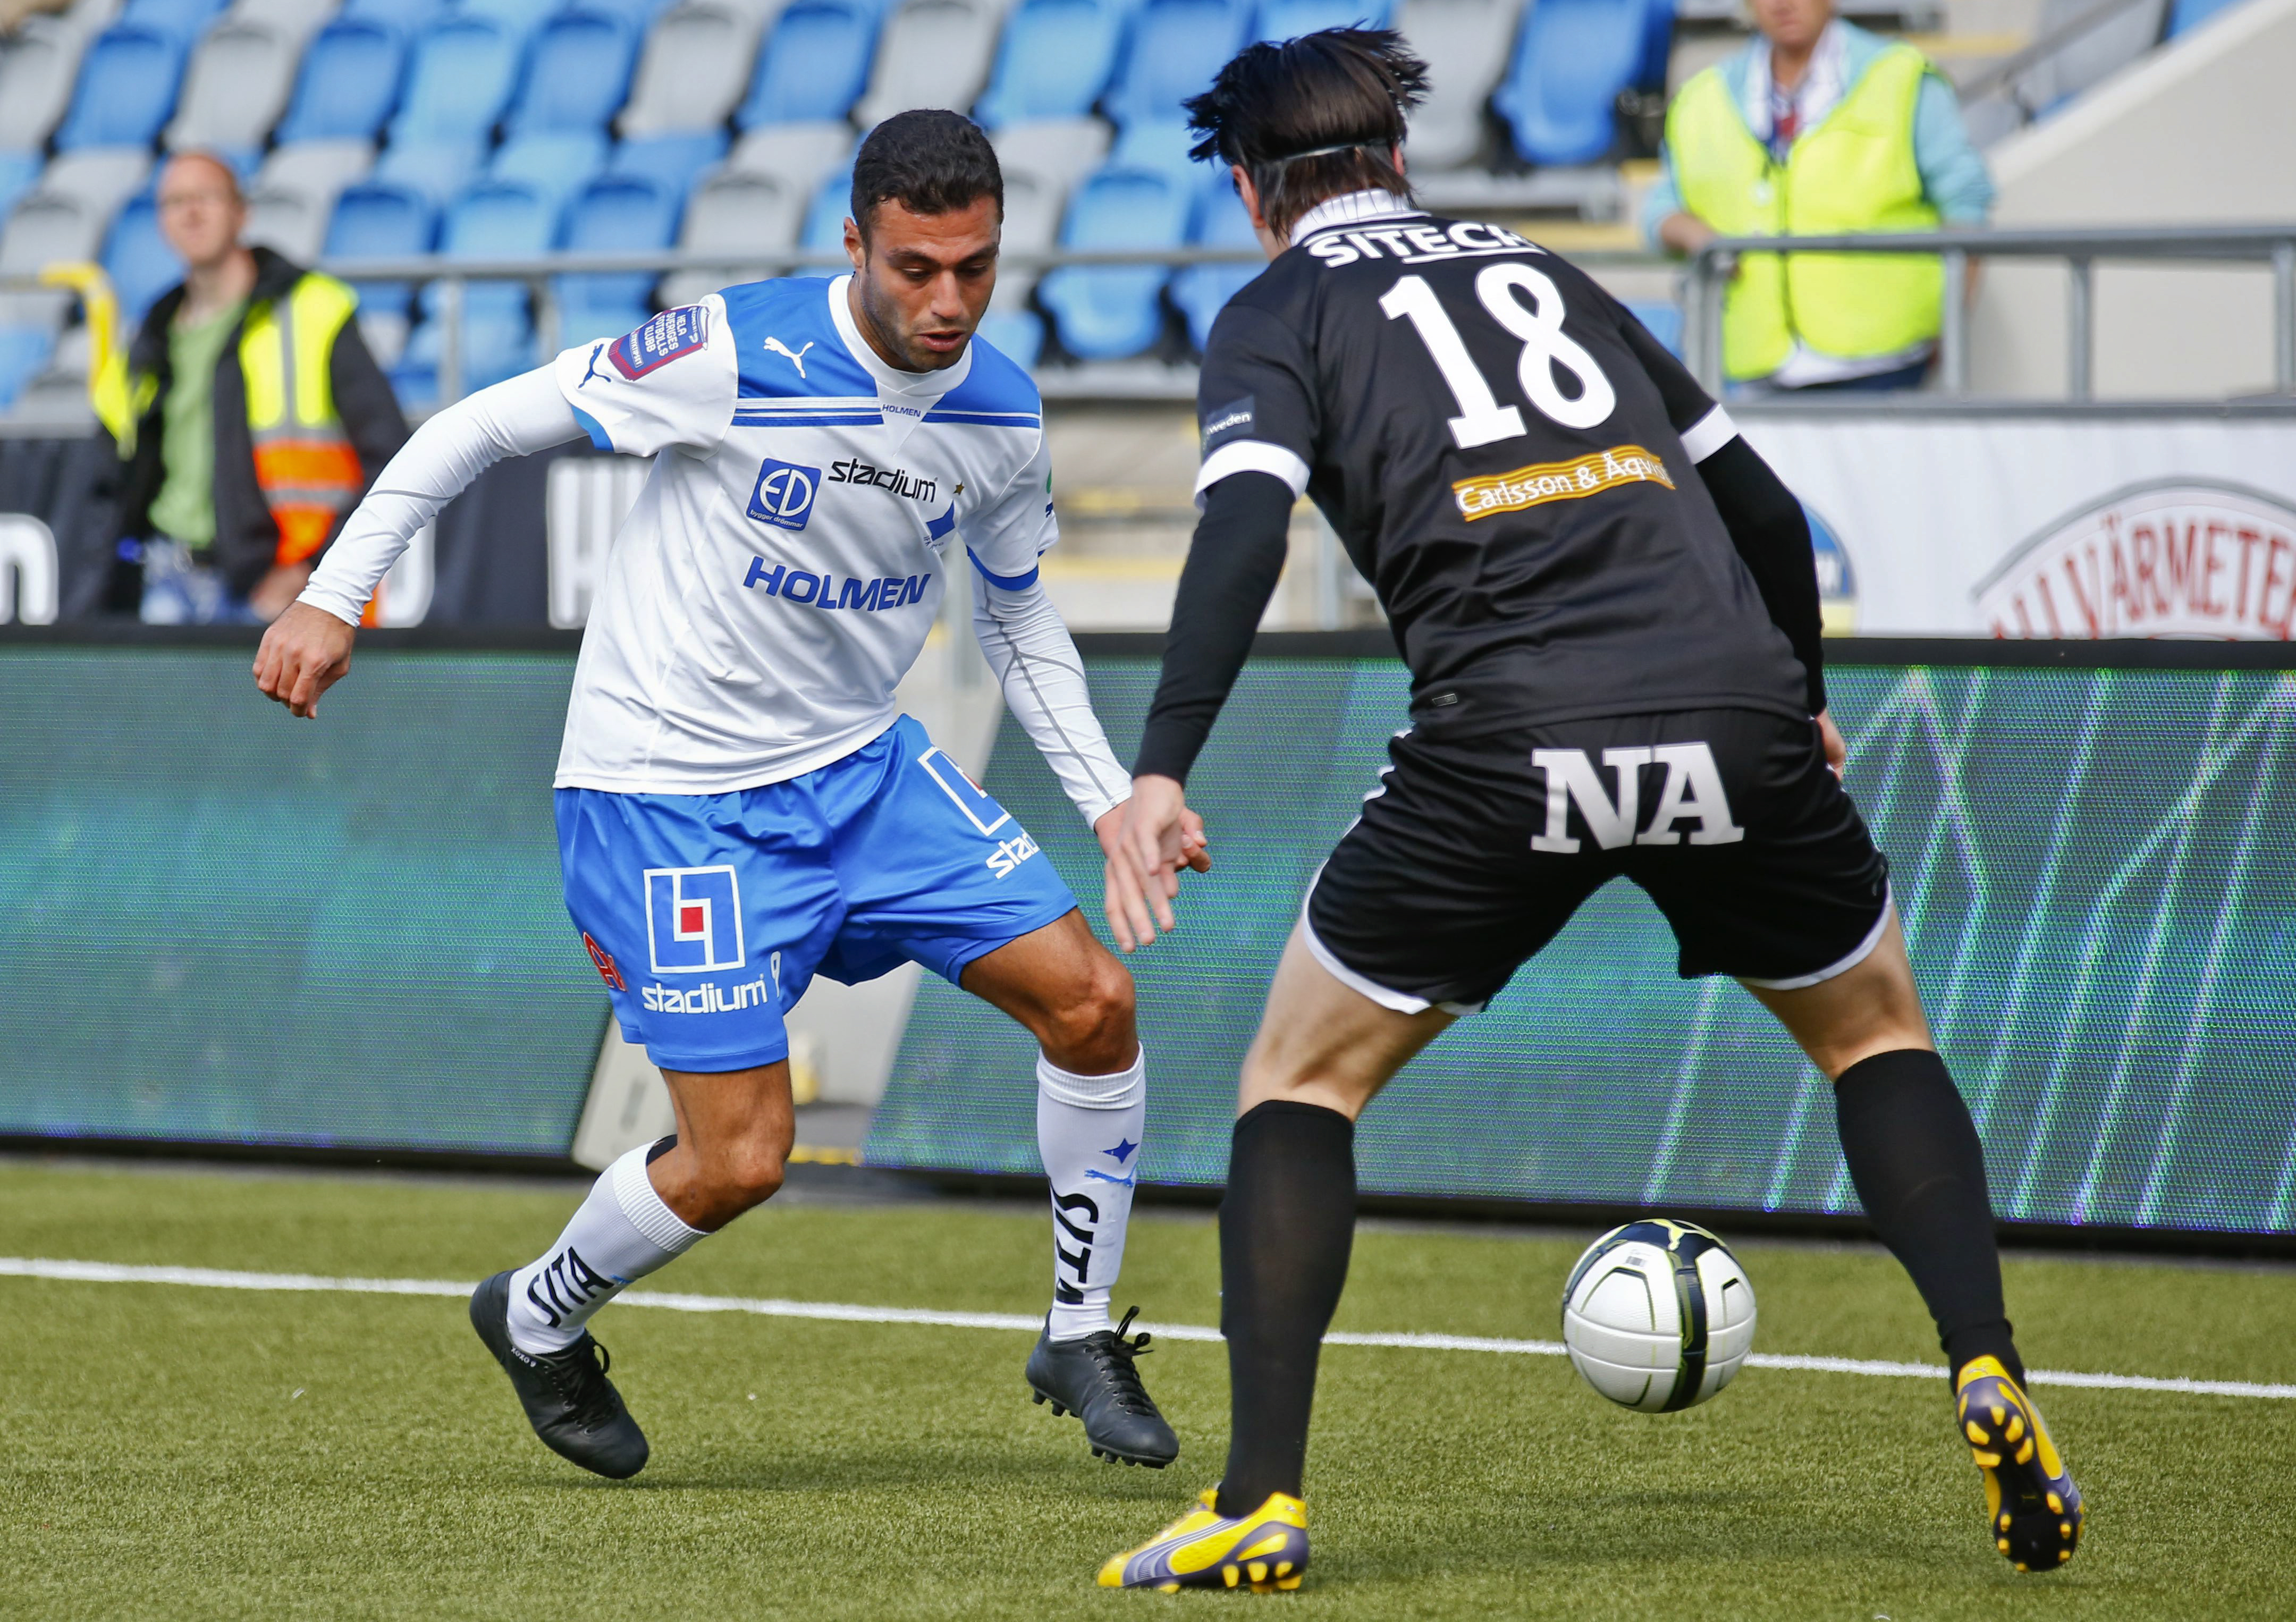 Imad Khalili, Fotboll, ÖSK, Allsvenskan, IFK Norrköping, Örebro